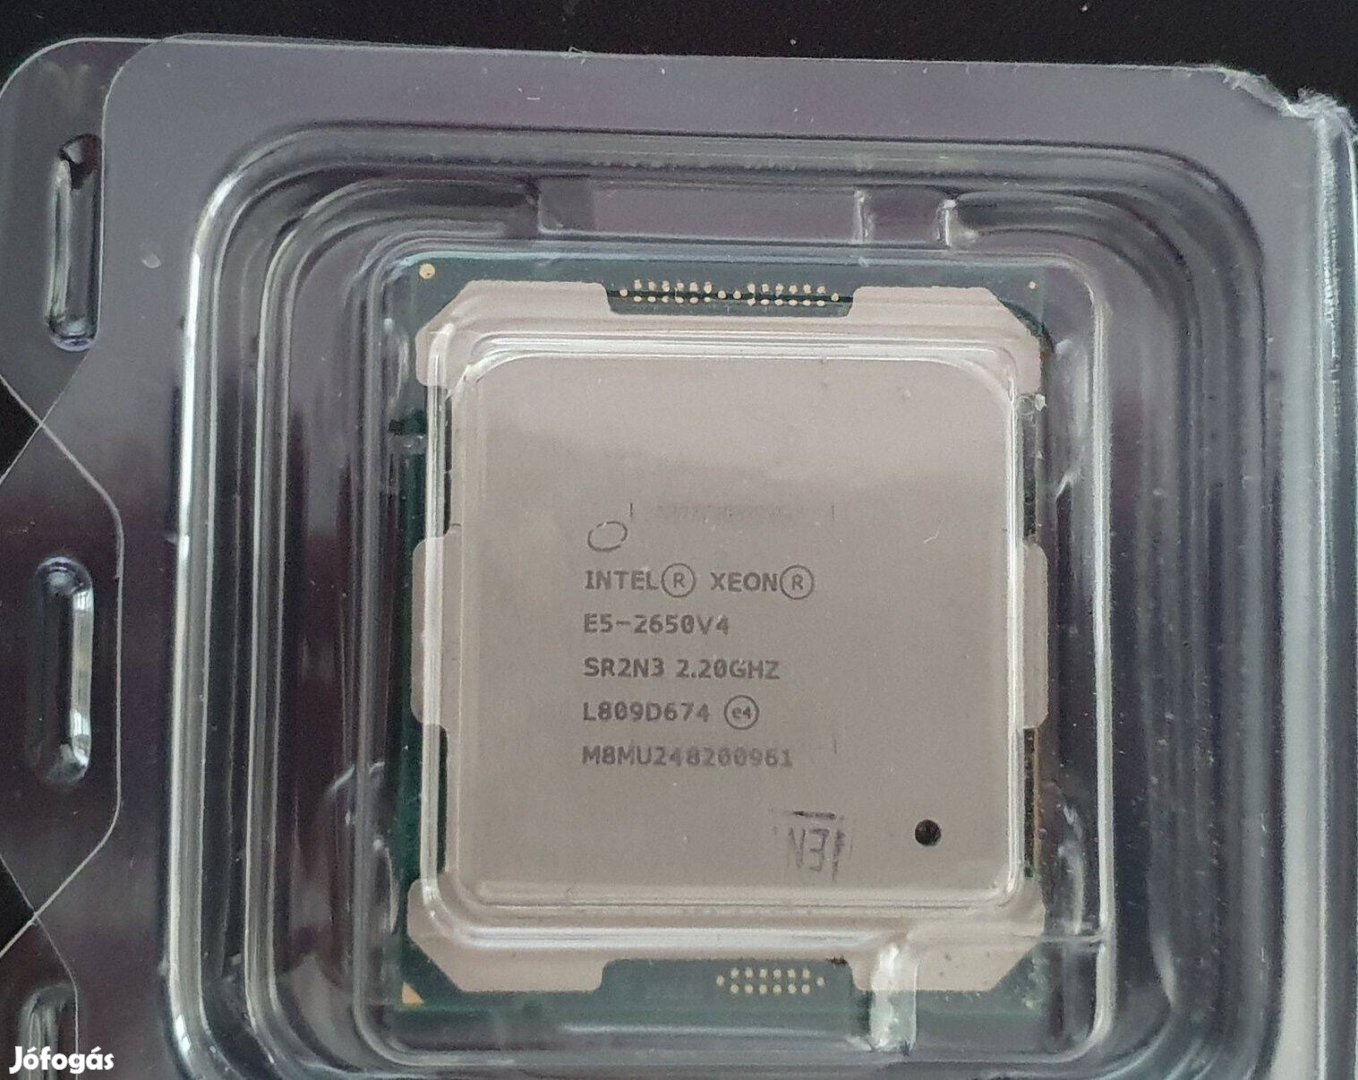 Intel Xeon E5-2650 v4 cpu 12/24 mag x 2.5-2.9 Ghz, 2011v3, tobb dbb d